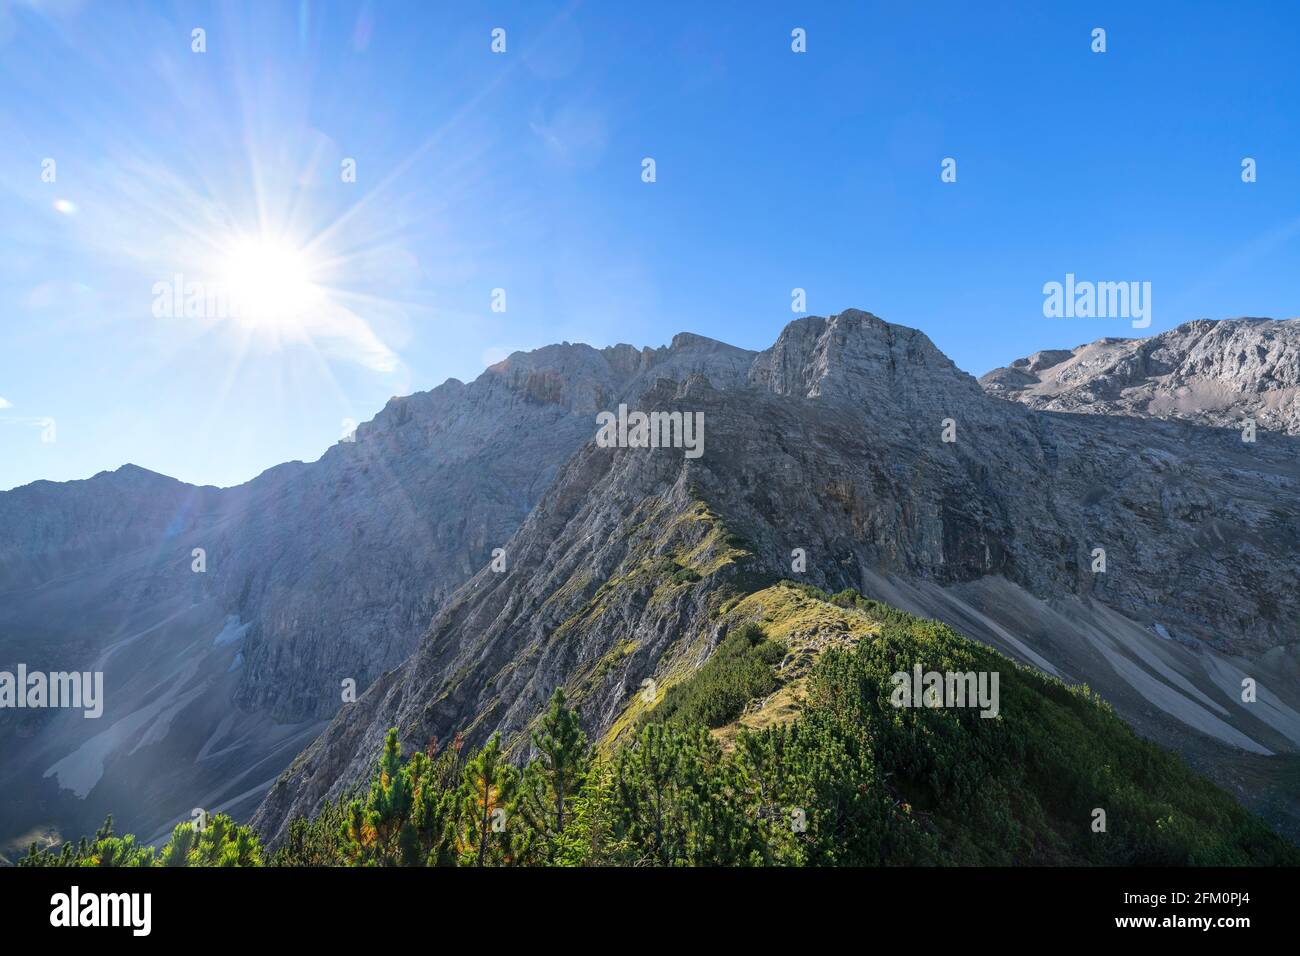 Paysage alpin avec montagnes rocheuses à une journée ensoleillée en été. Karwendel, Tyrol, Autriche, Europe Banque D'Images